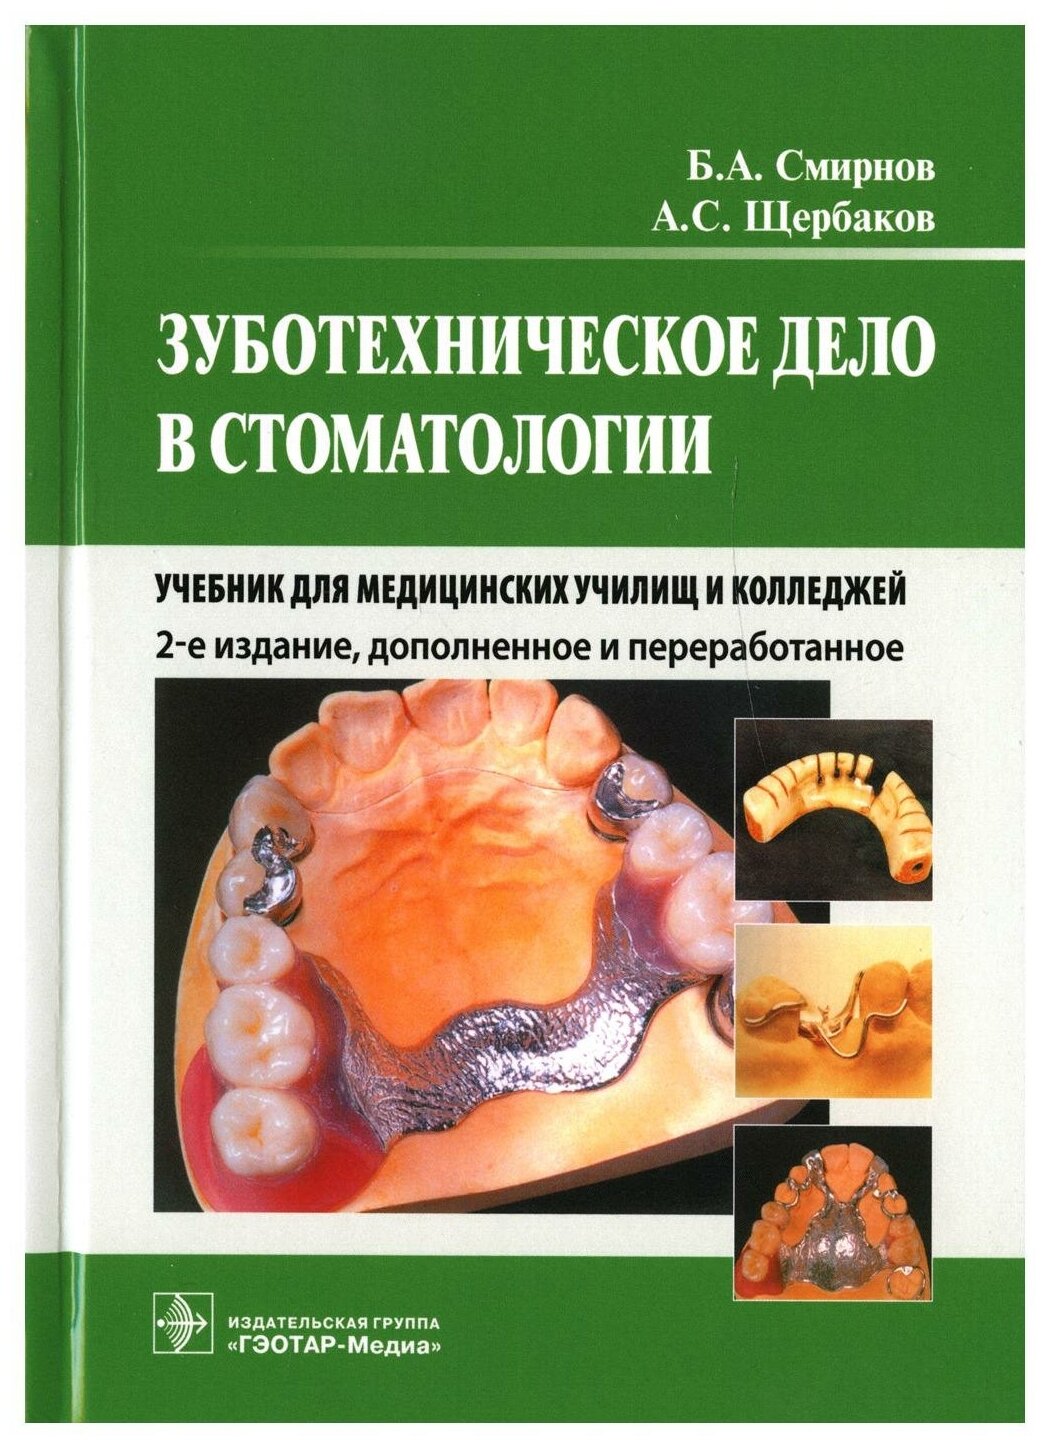 Зуботехническое дело в стоматологии: Учебник для медицинских училищ и колледжей. 2-е изд, доп. и перераб